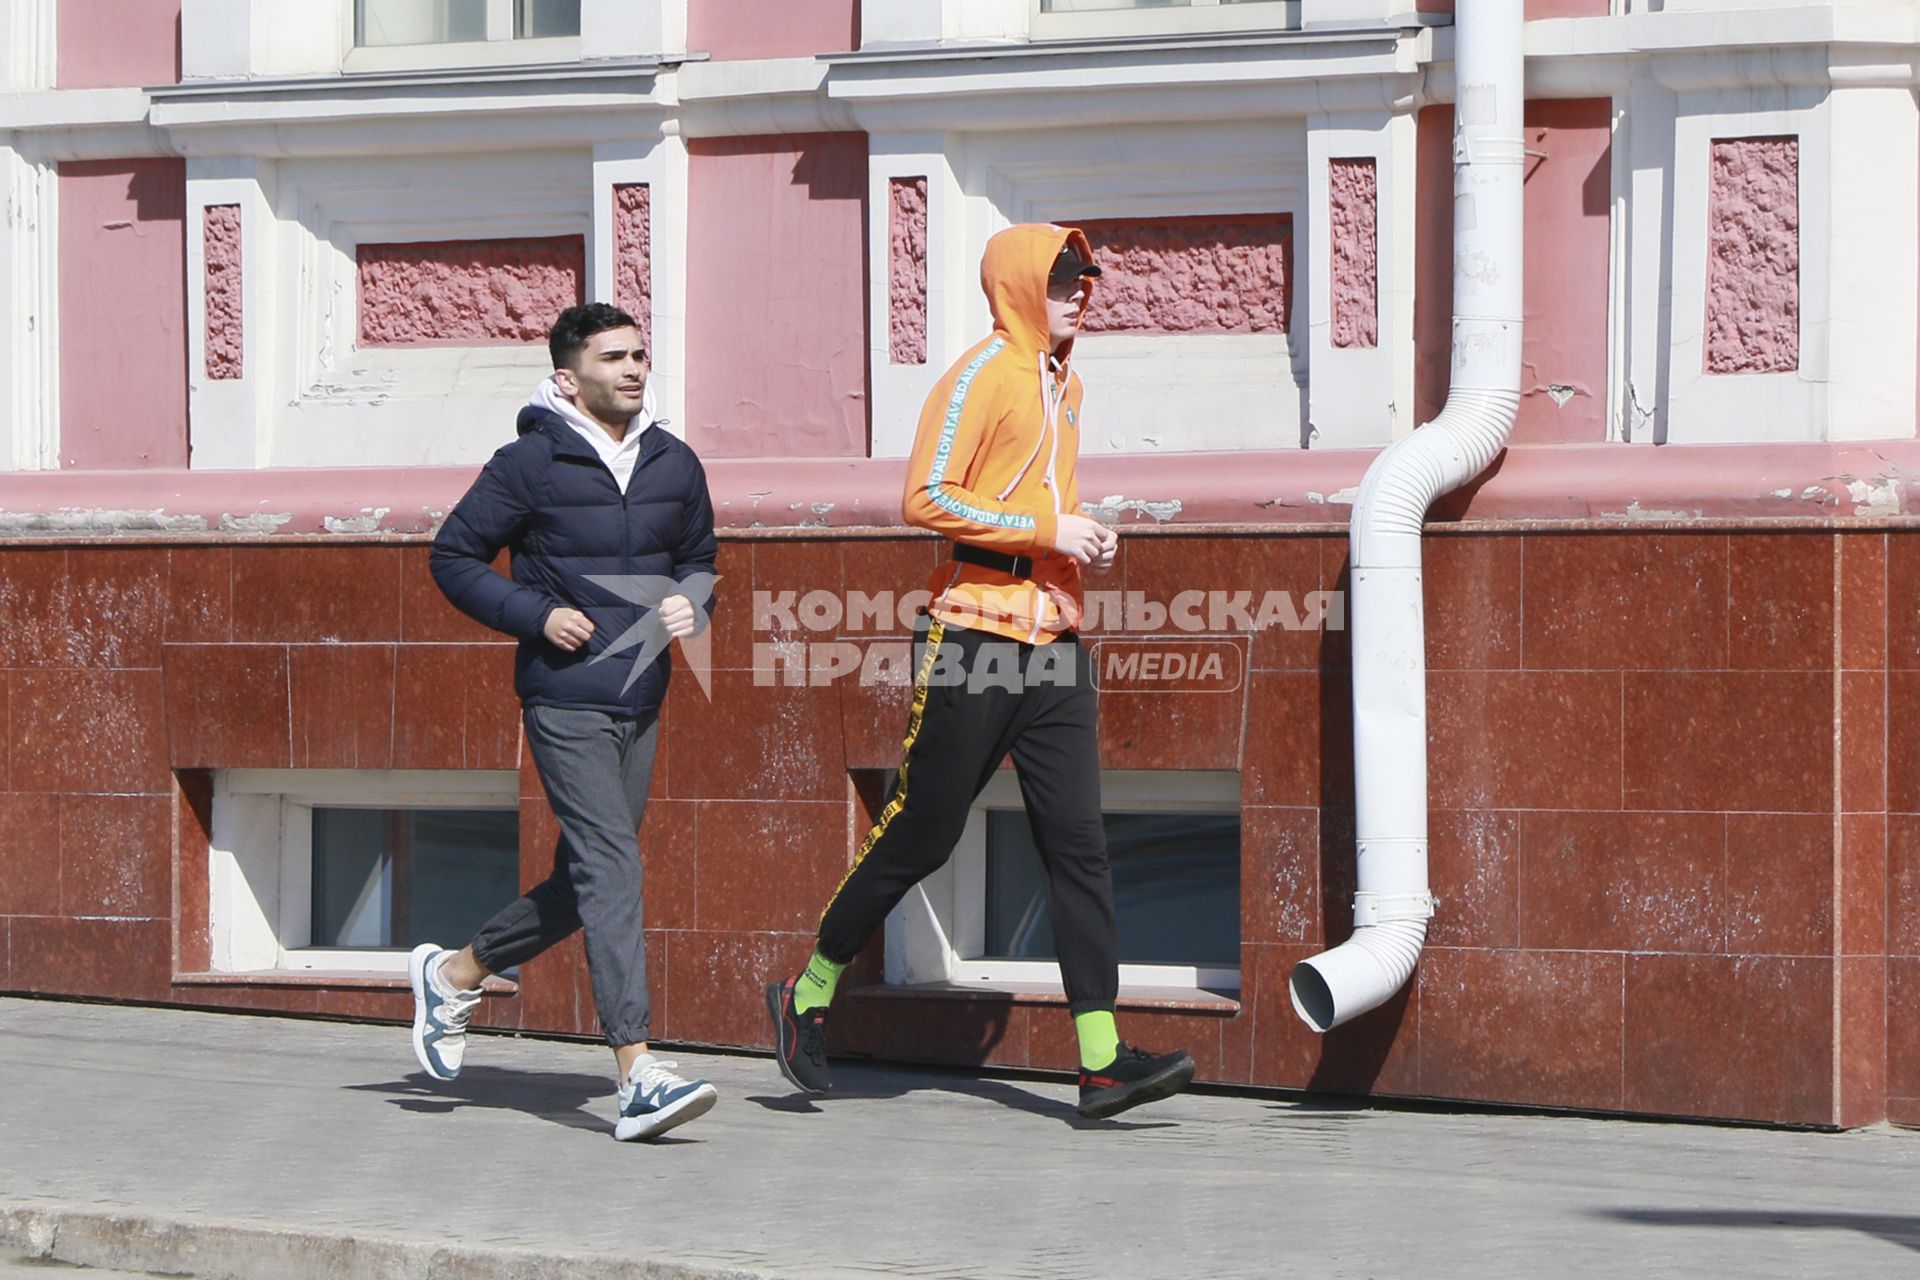 Барнаул. Молодые люди во время пробежки на улице.